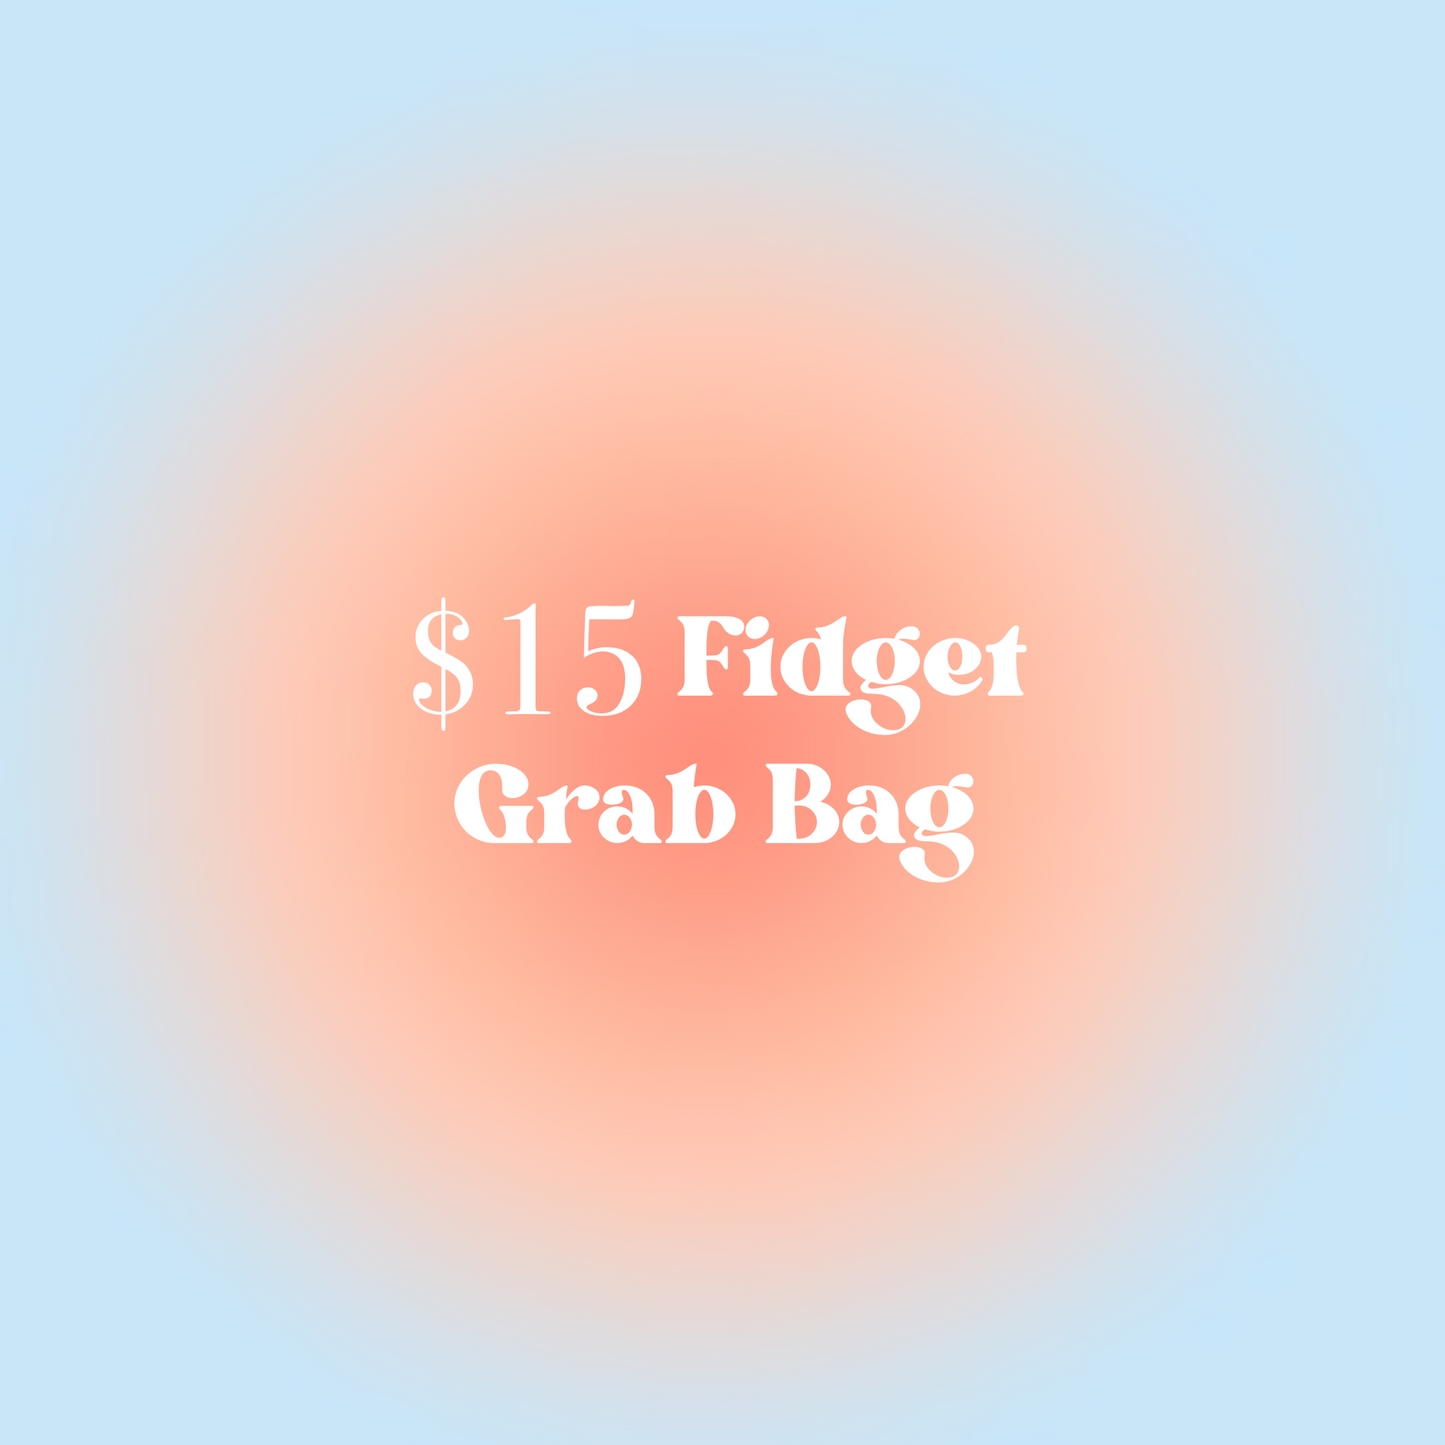 $15 Fidget Grab Bag